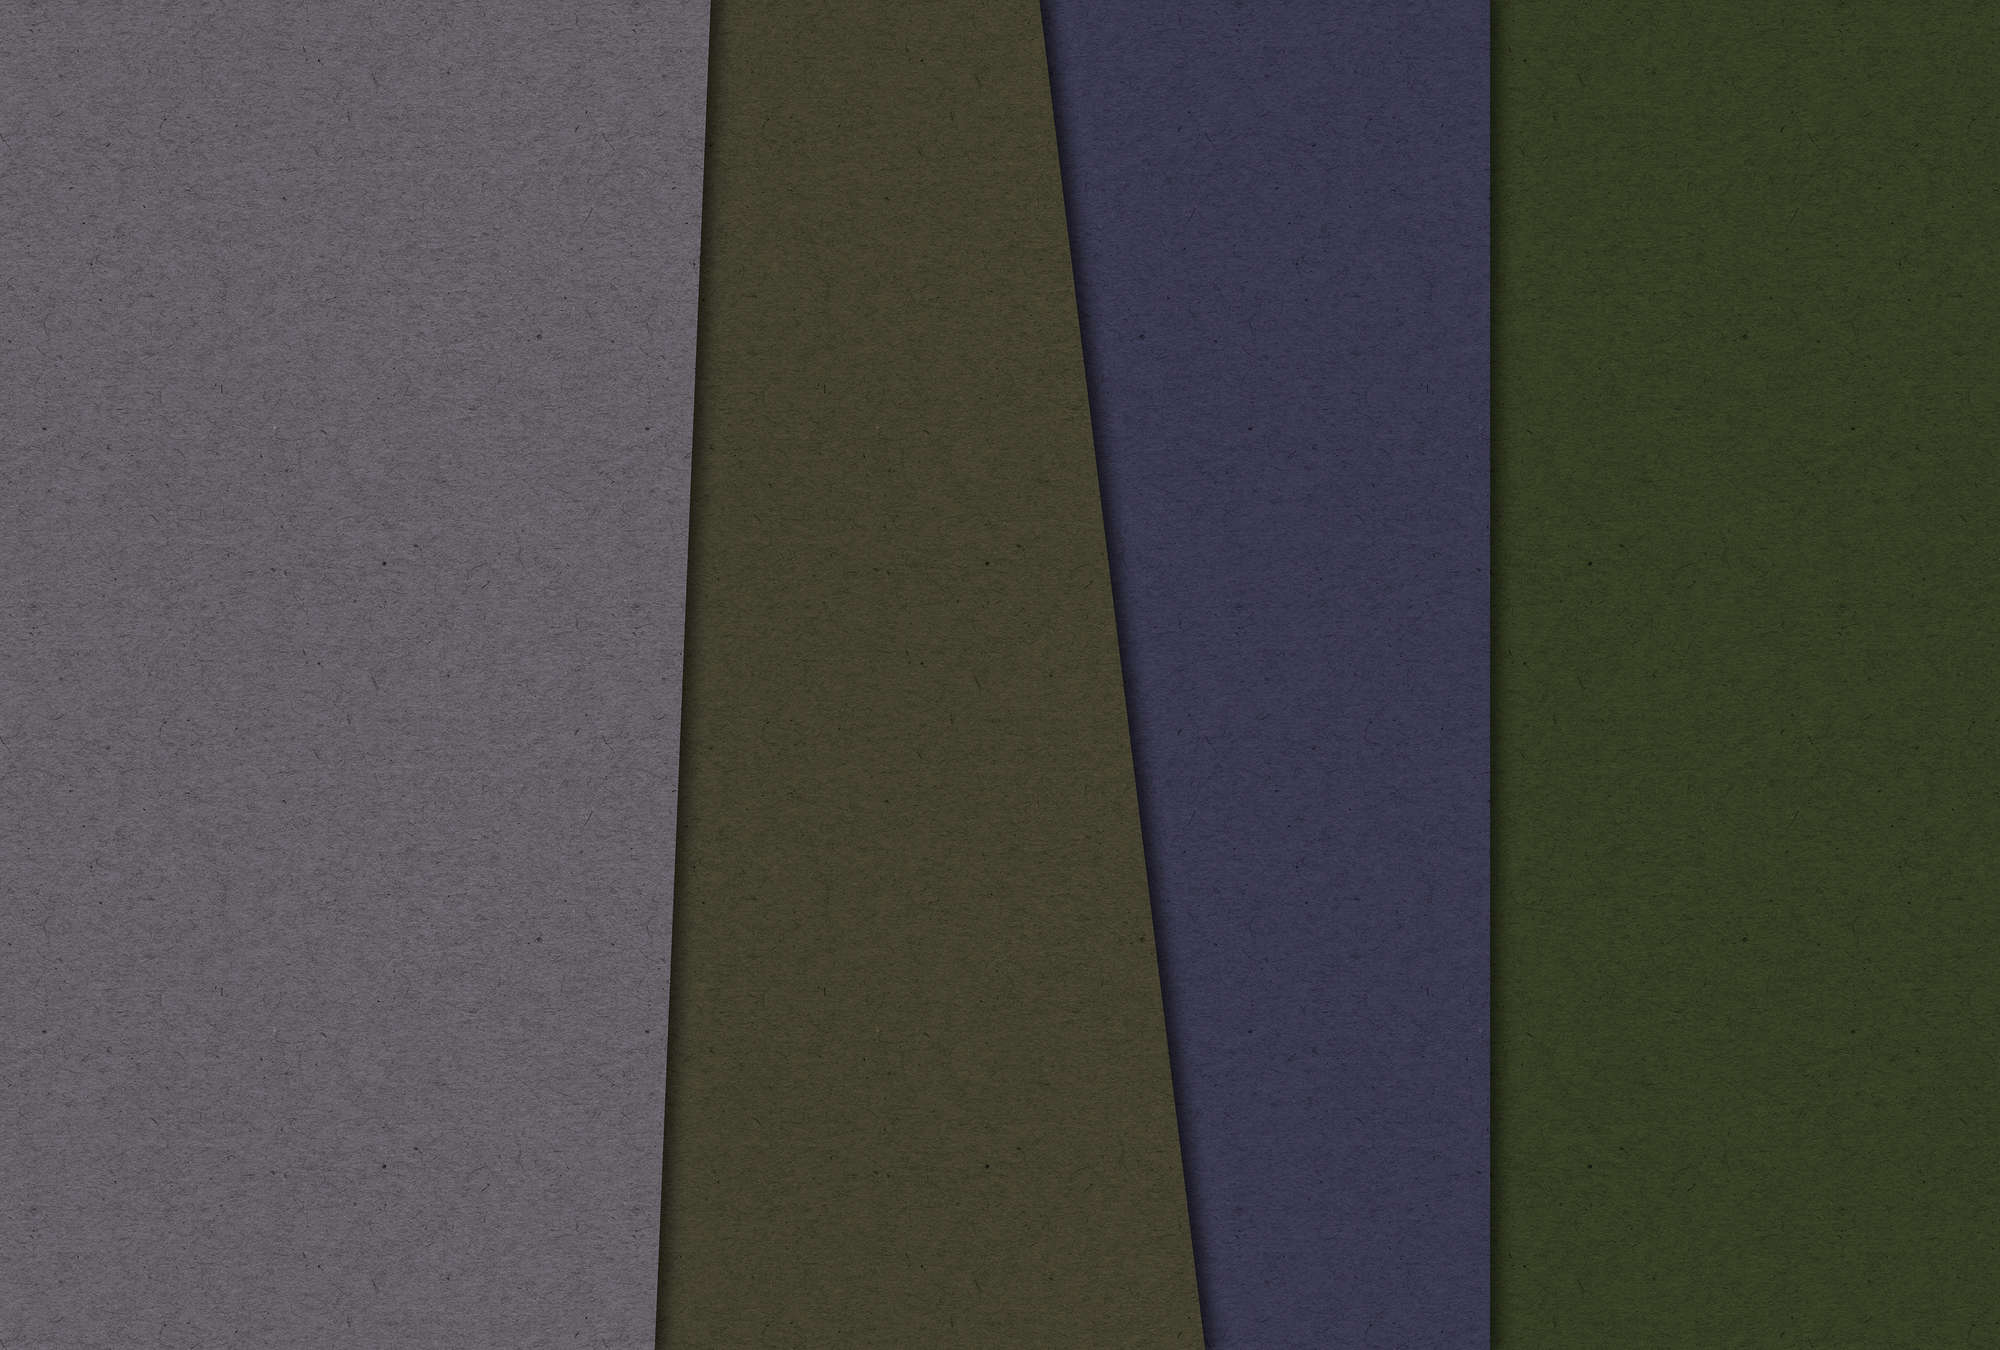             Layered Cardboard 3 - Fototapete minimalistisch & abstrakt- Pappe Struktur – Grün, Violett | Mattes Glattvlies
        